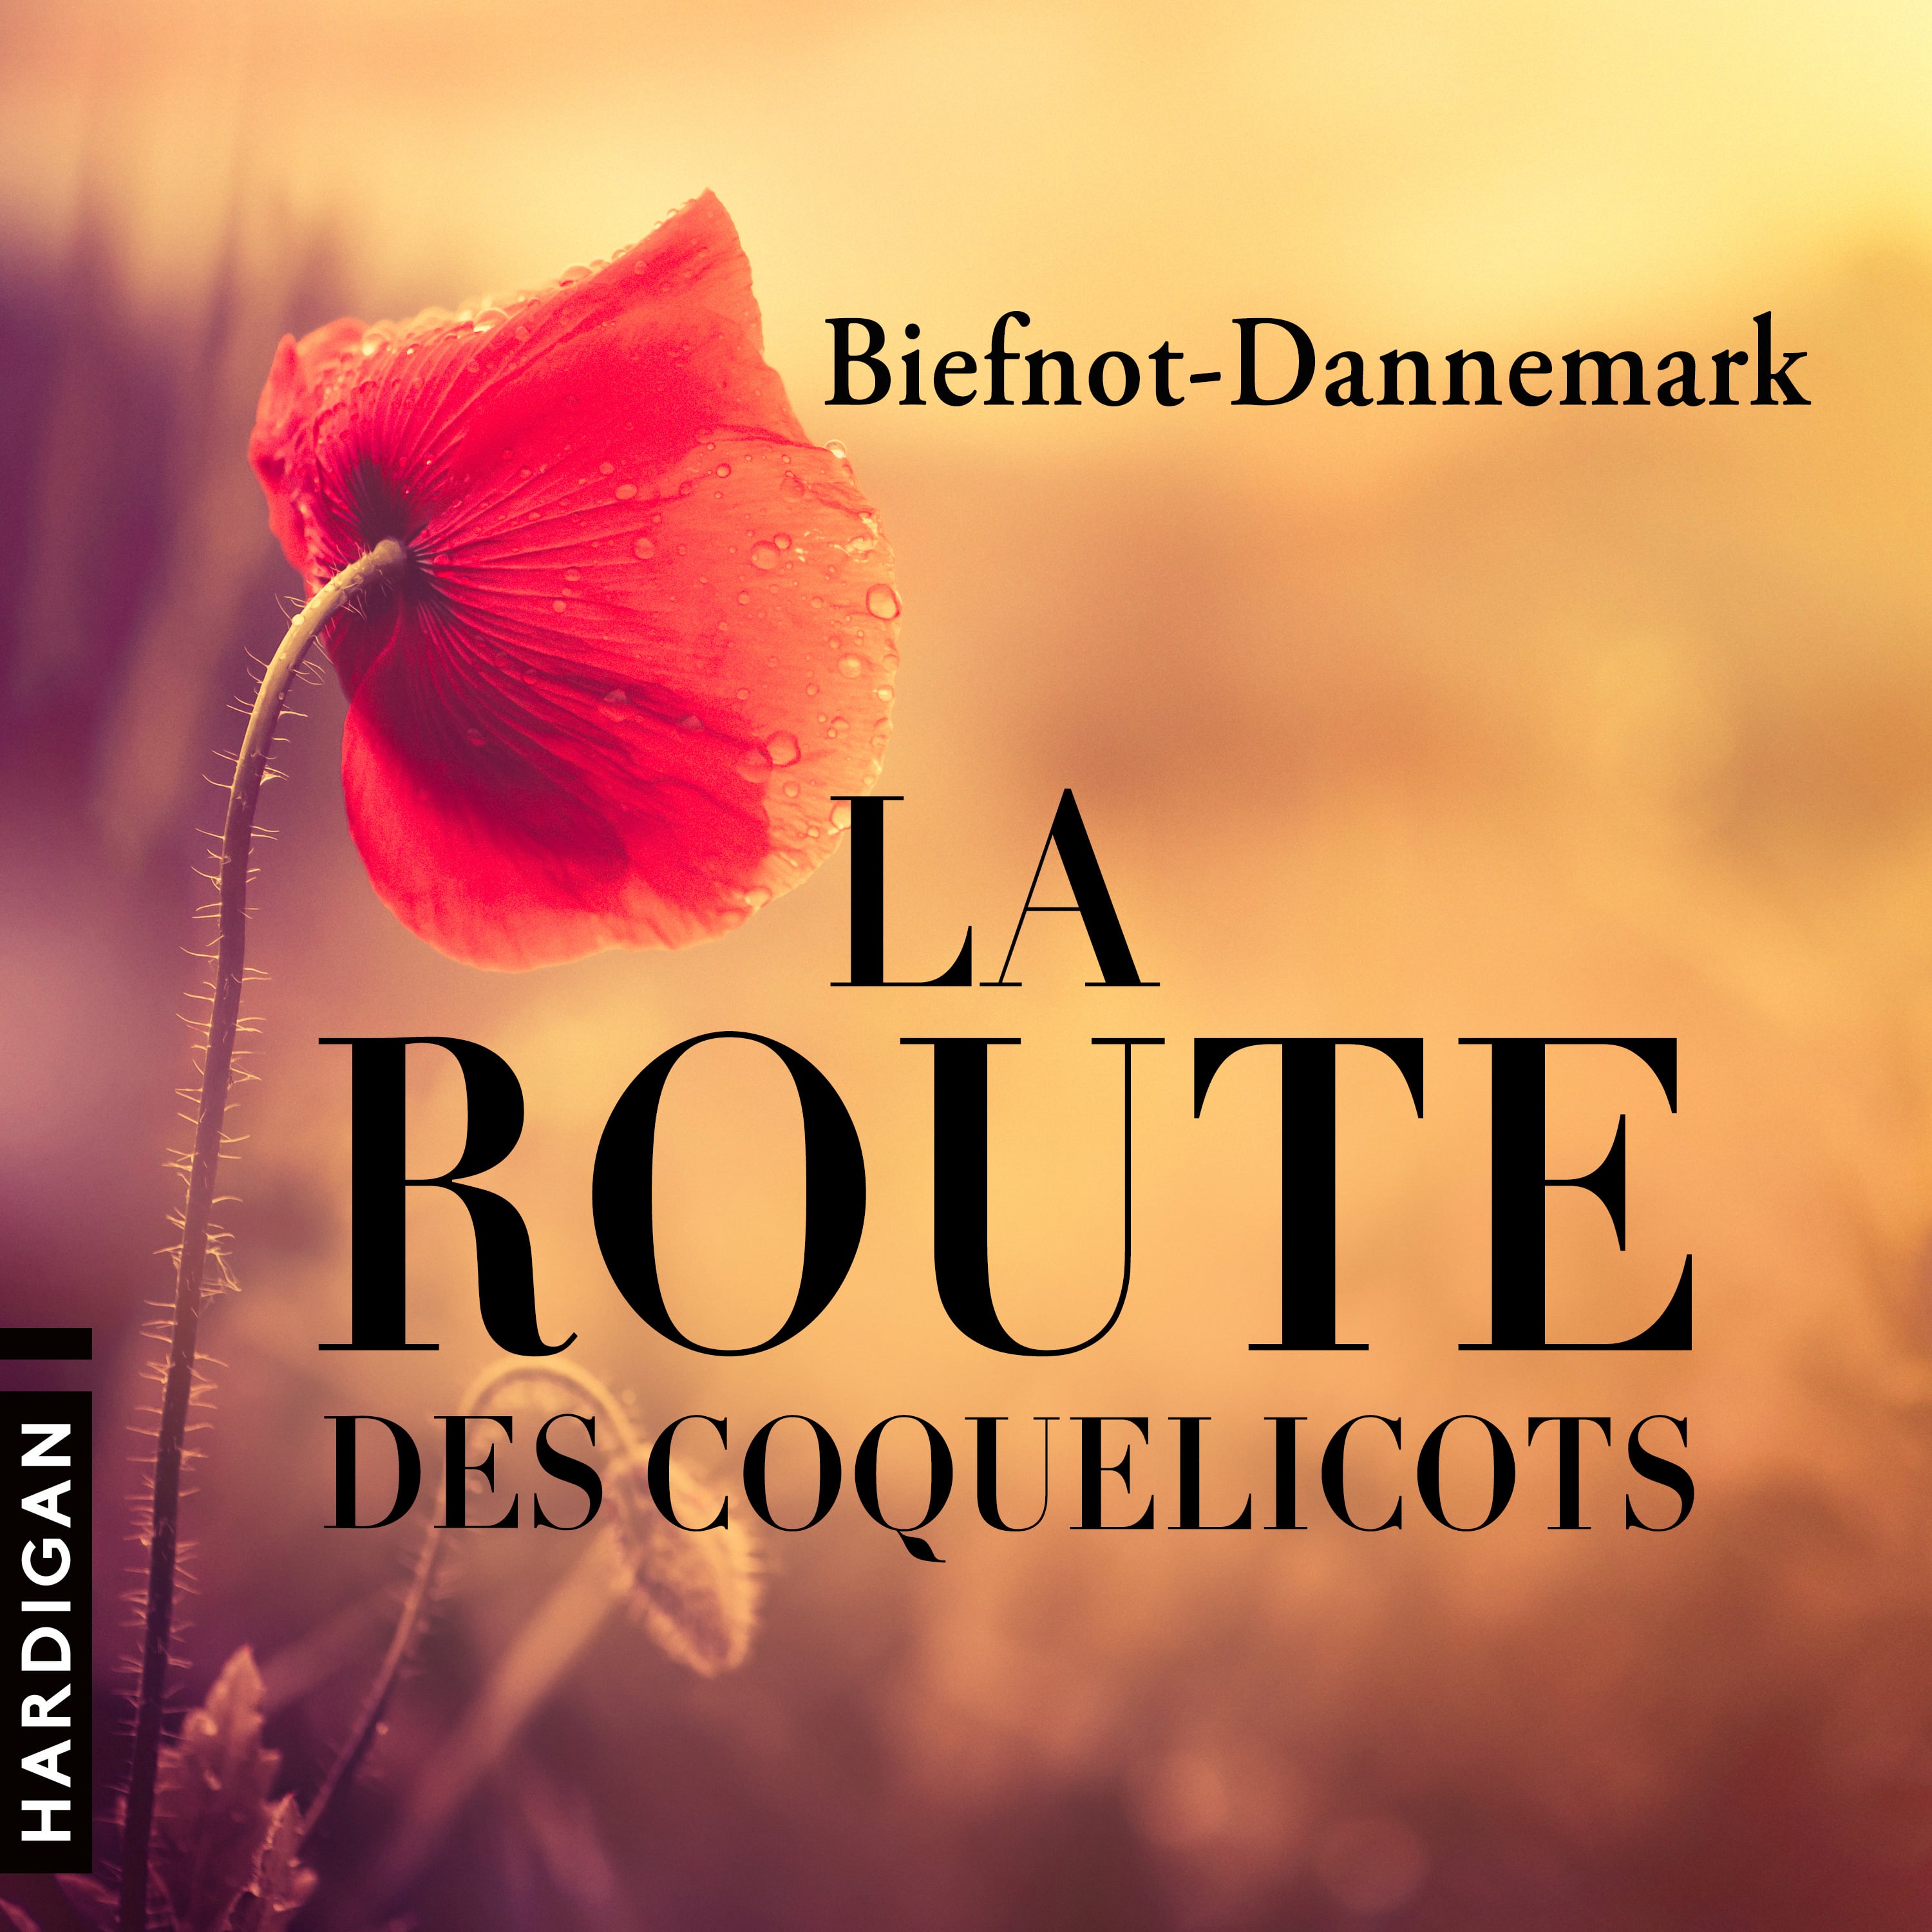 Couverture du livre audio La route des coquelicots De Francis Dannemark  et Véronique Biefnot 